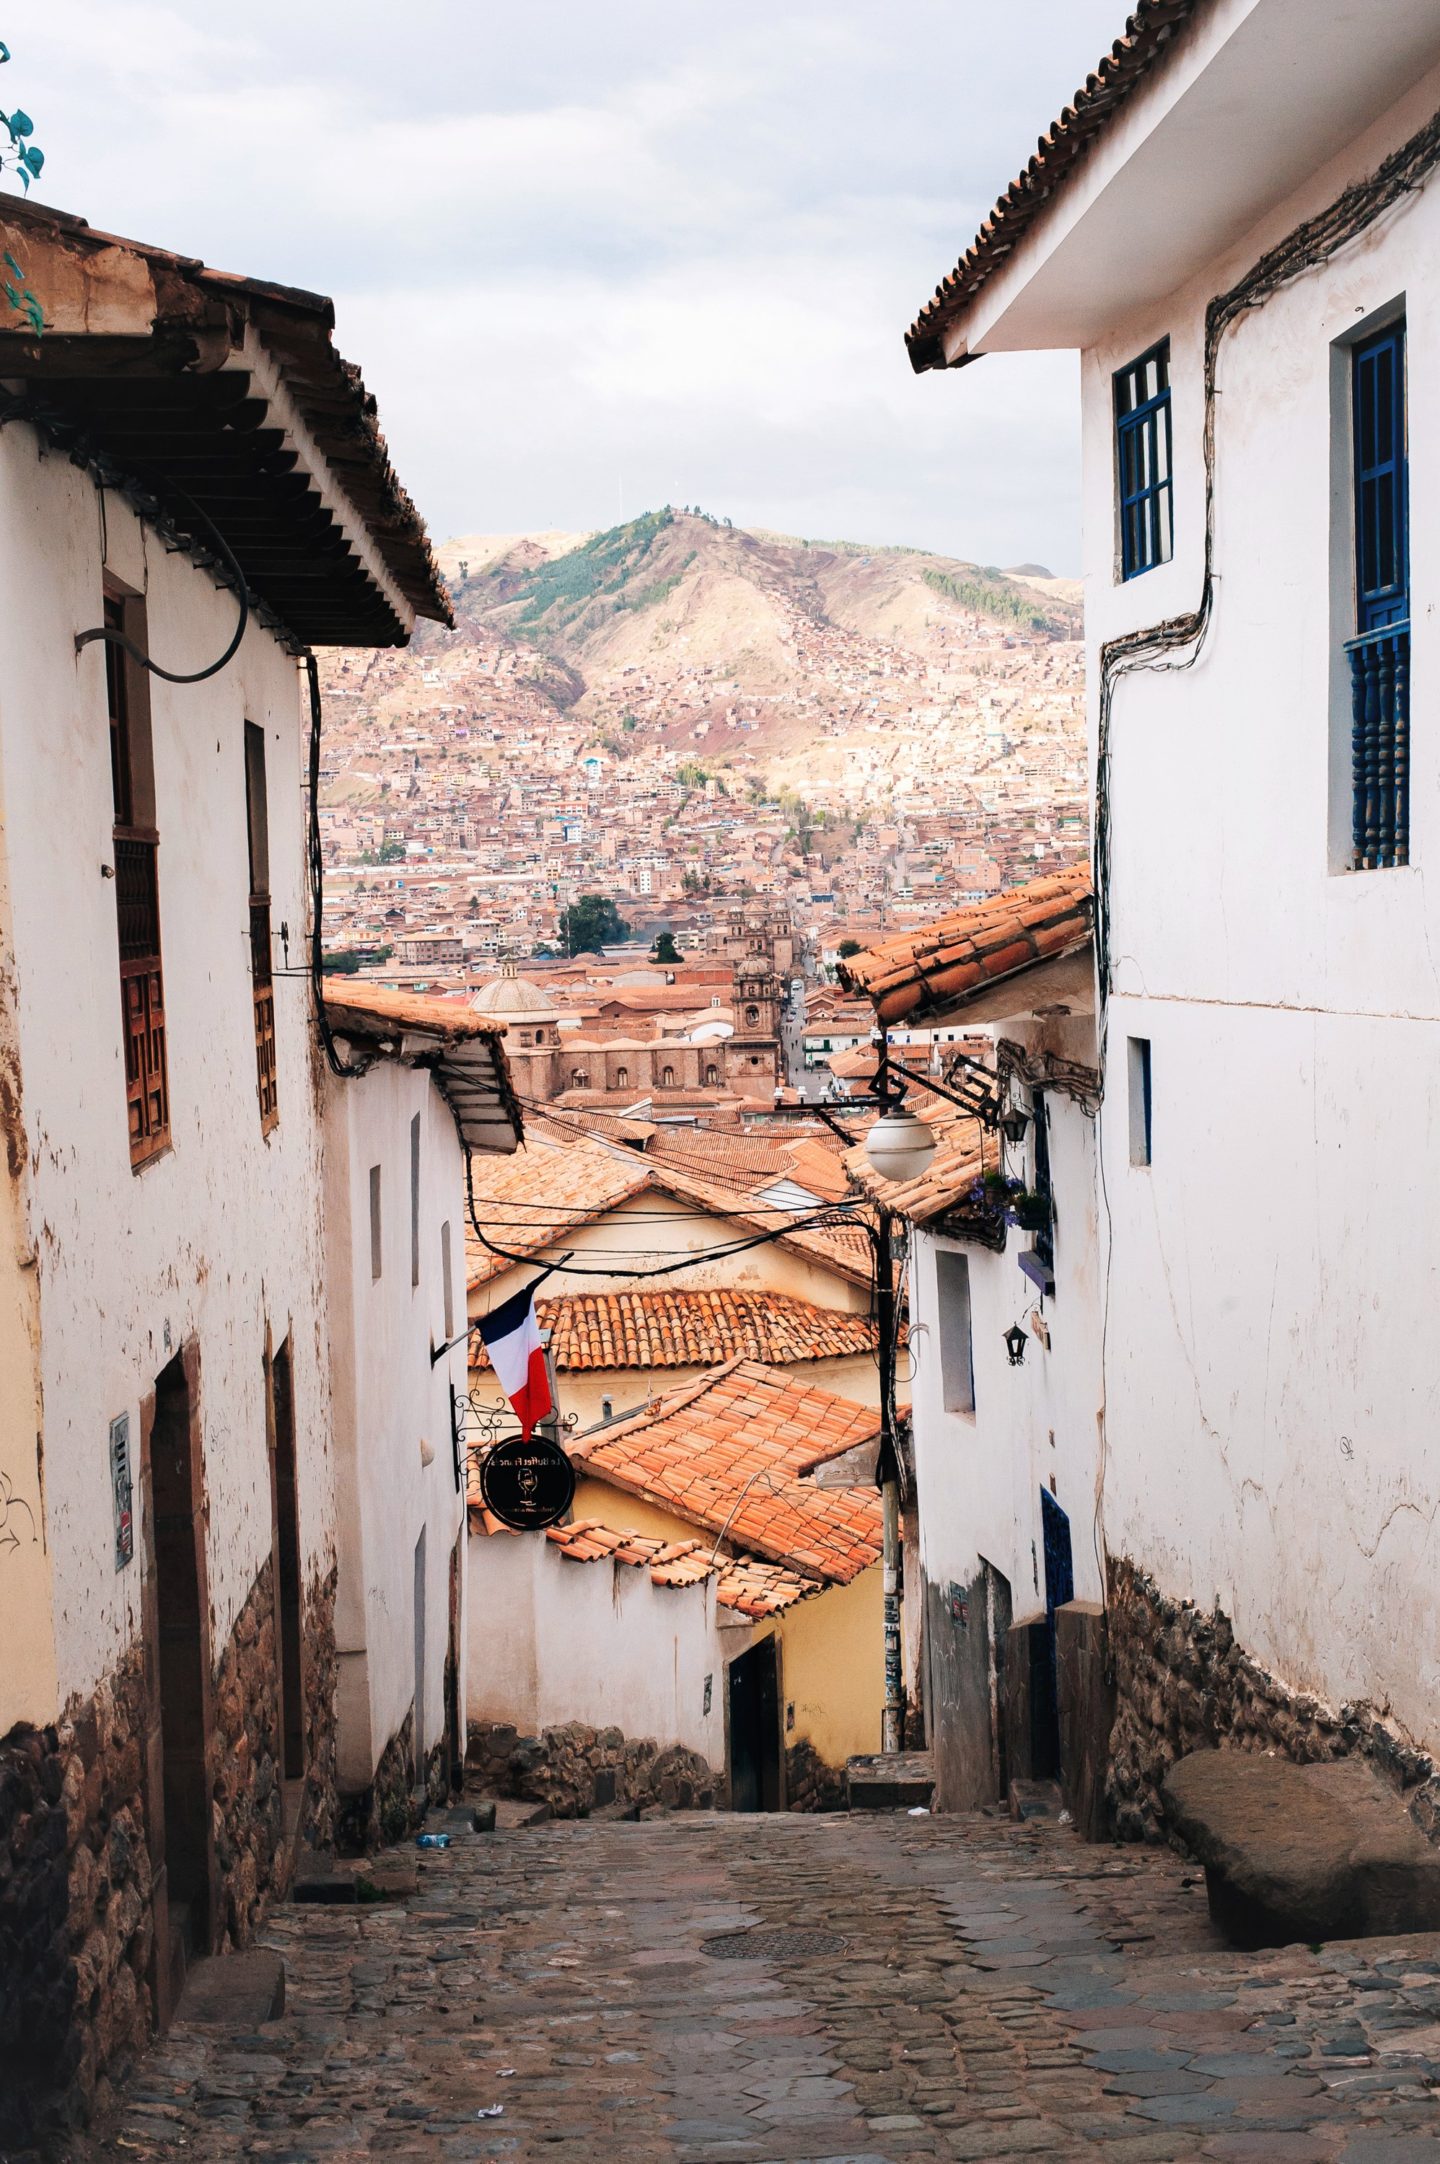 Peruvian hiking destinations: Cusco